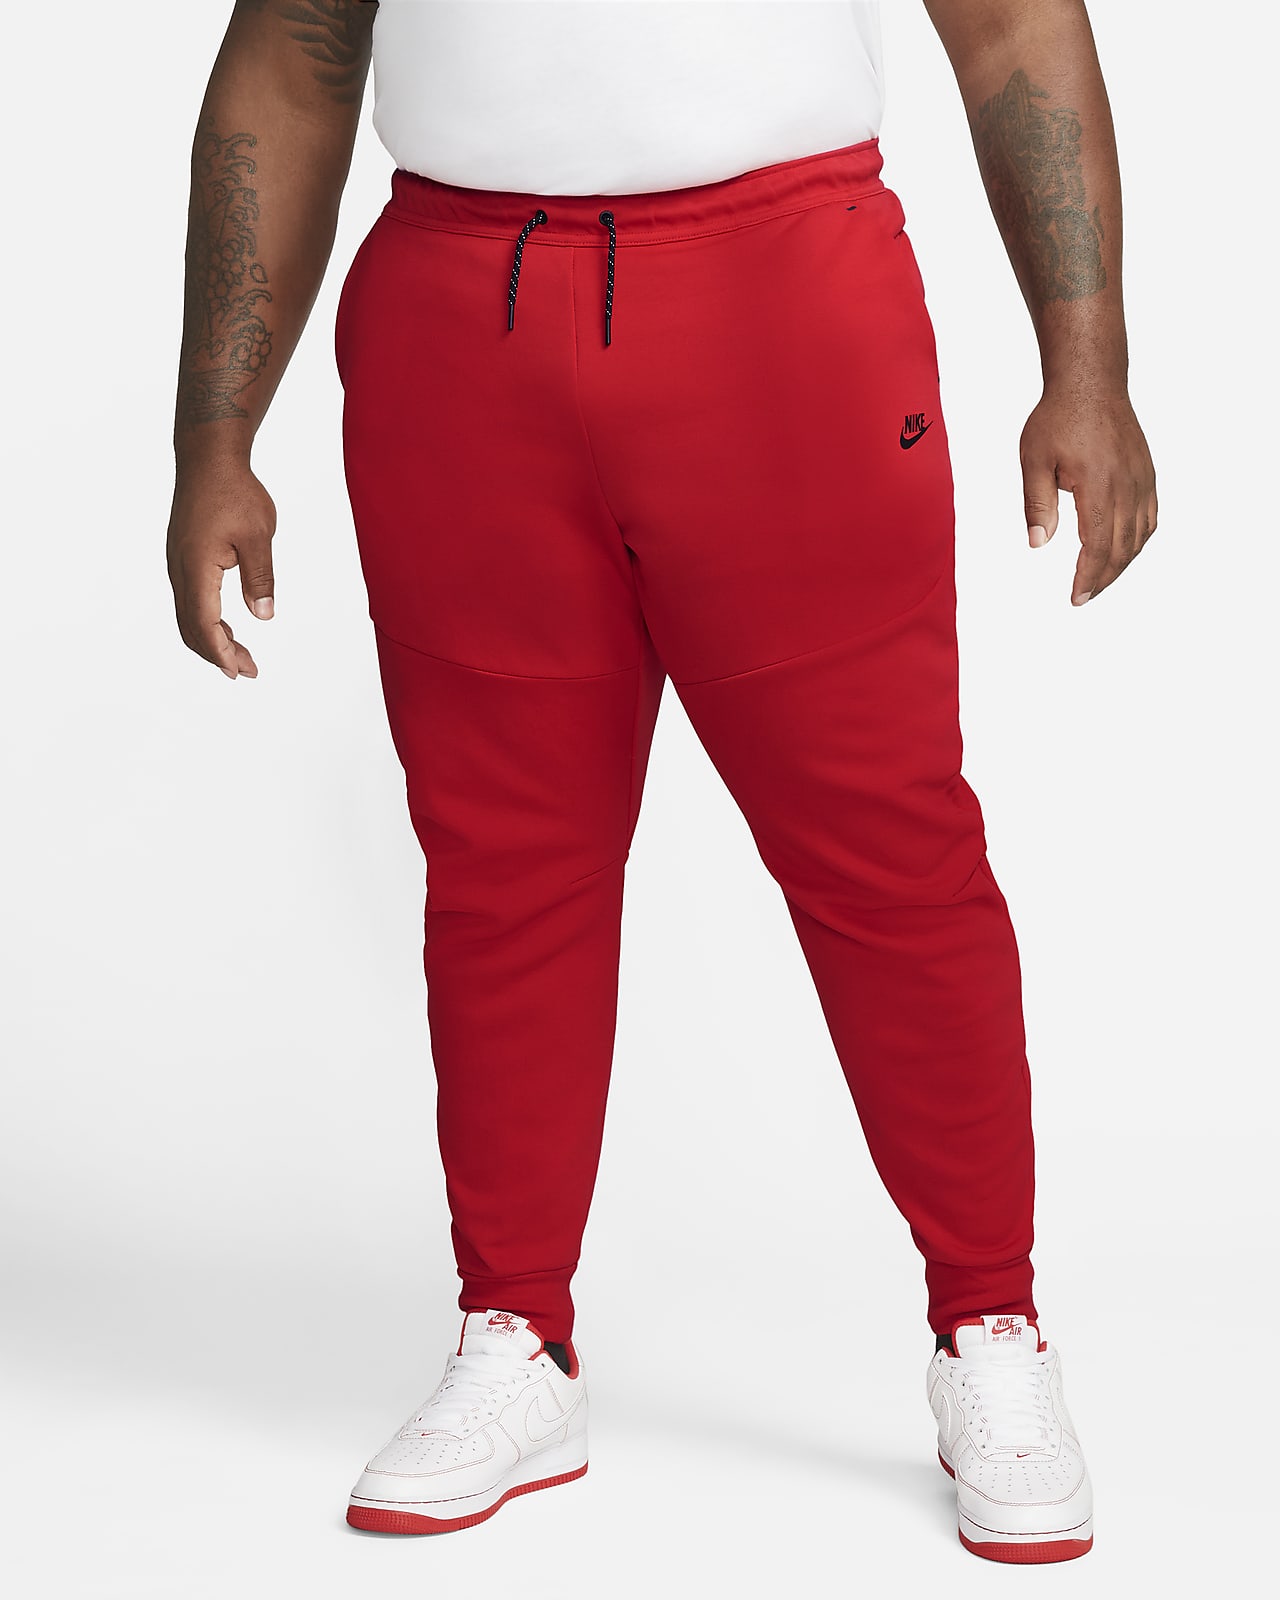 Pantalon De Jogging Nike Sportswear Tech Fleece Pour Nike FR | vlr.eng.br